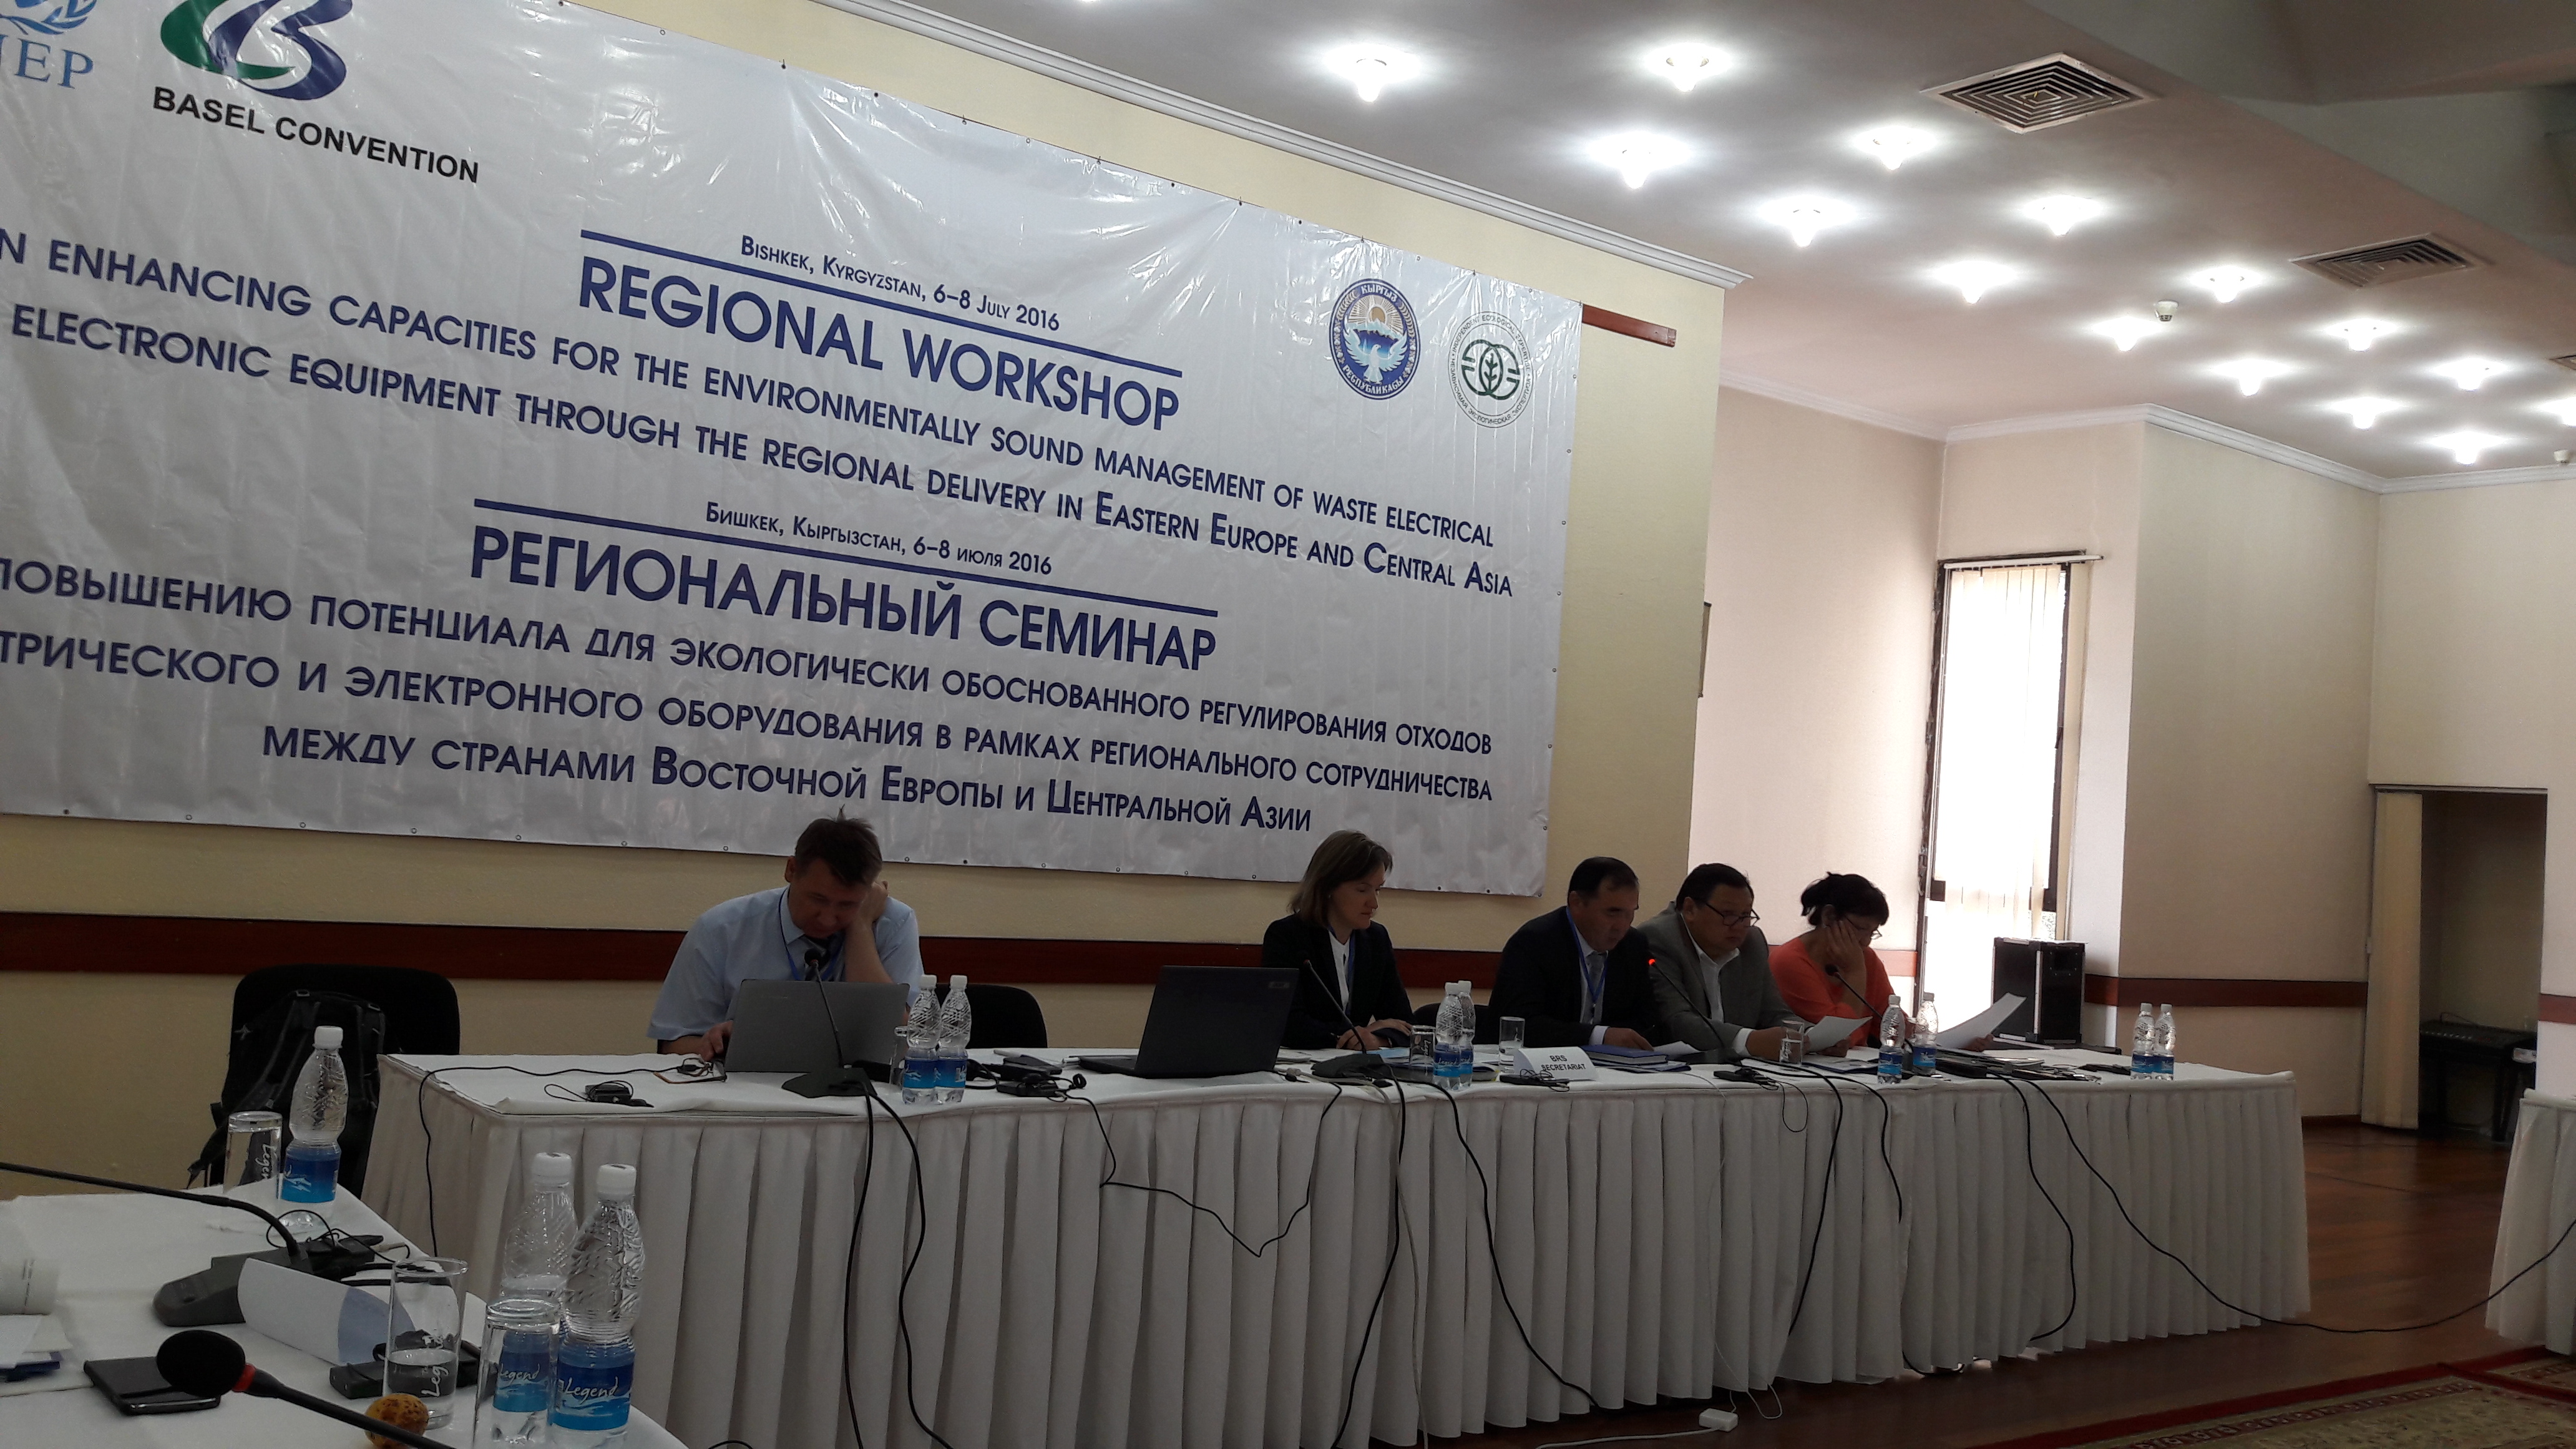 Региональный семинар по укреплению потенциала для экологически обоснованного регулирования отходов электрического и электронного оборудования посредством регионального сотрудничества между странами Восточной Европы и Центральной Азии